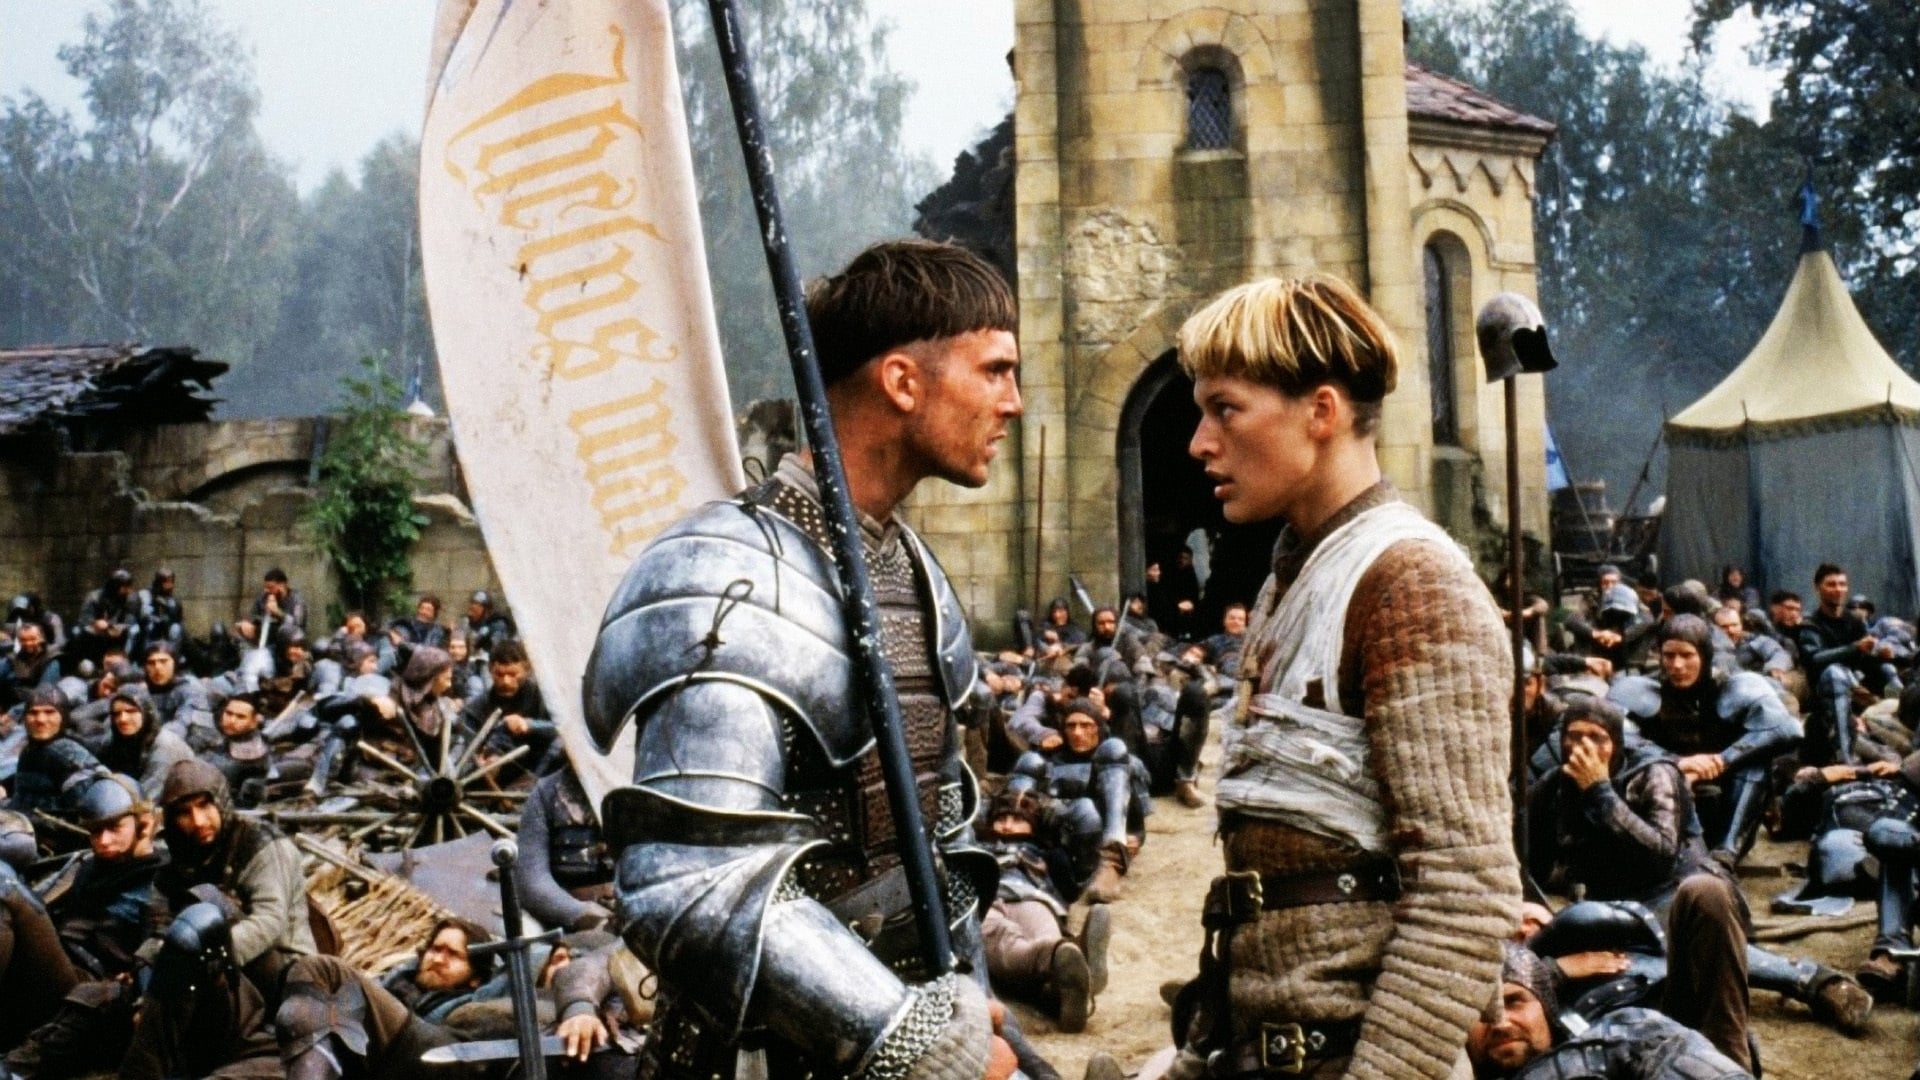 Image du film Jeanne d'Arc waujptyydqlhprwv9rma6ttkje4jpg